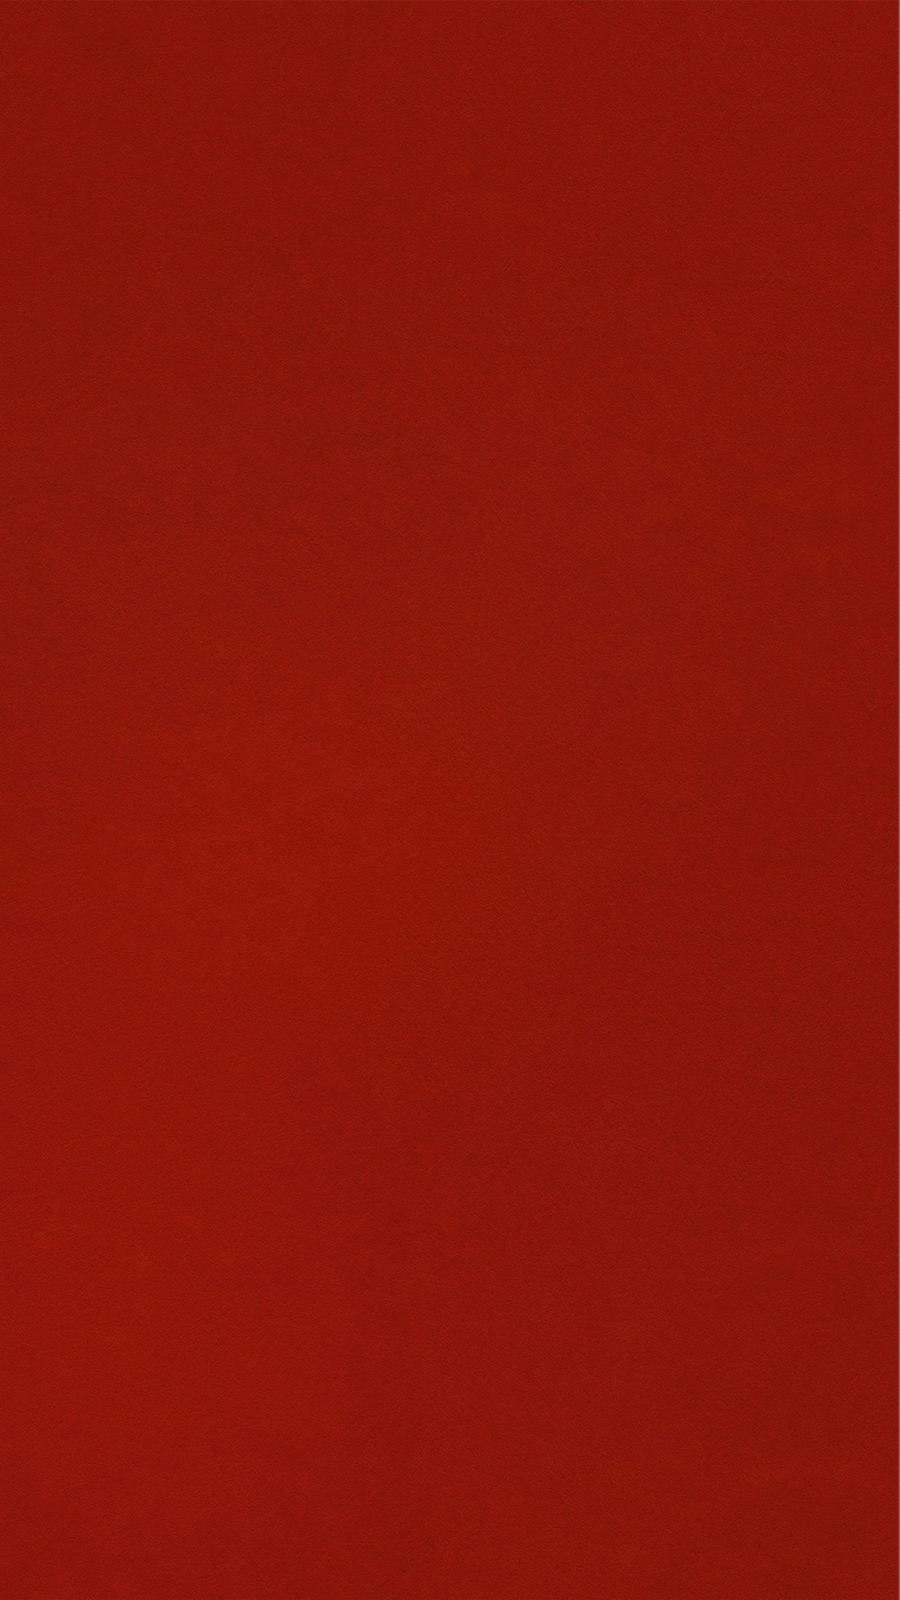 红色背景创意剪纸底纹纯色背景色块底色单色艺术图片 Canva可画